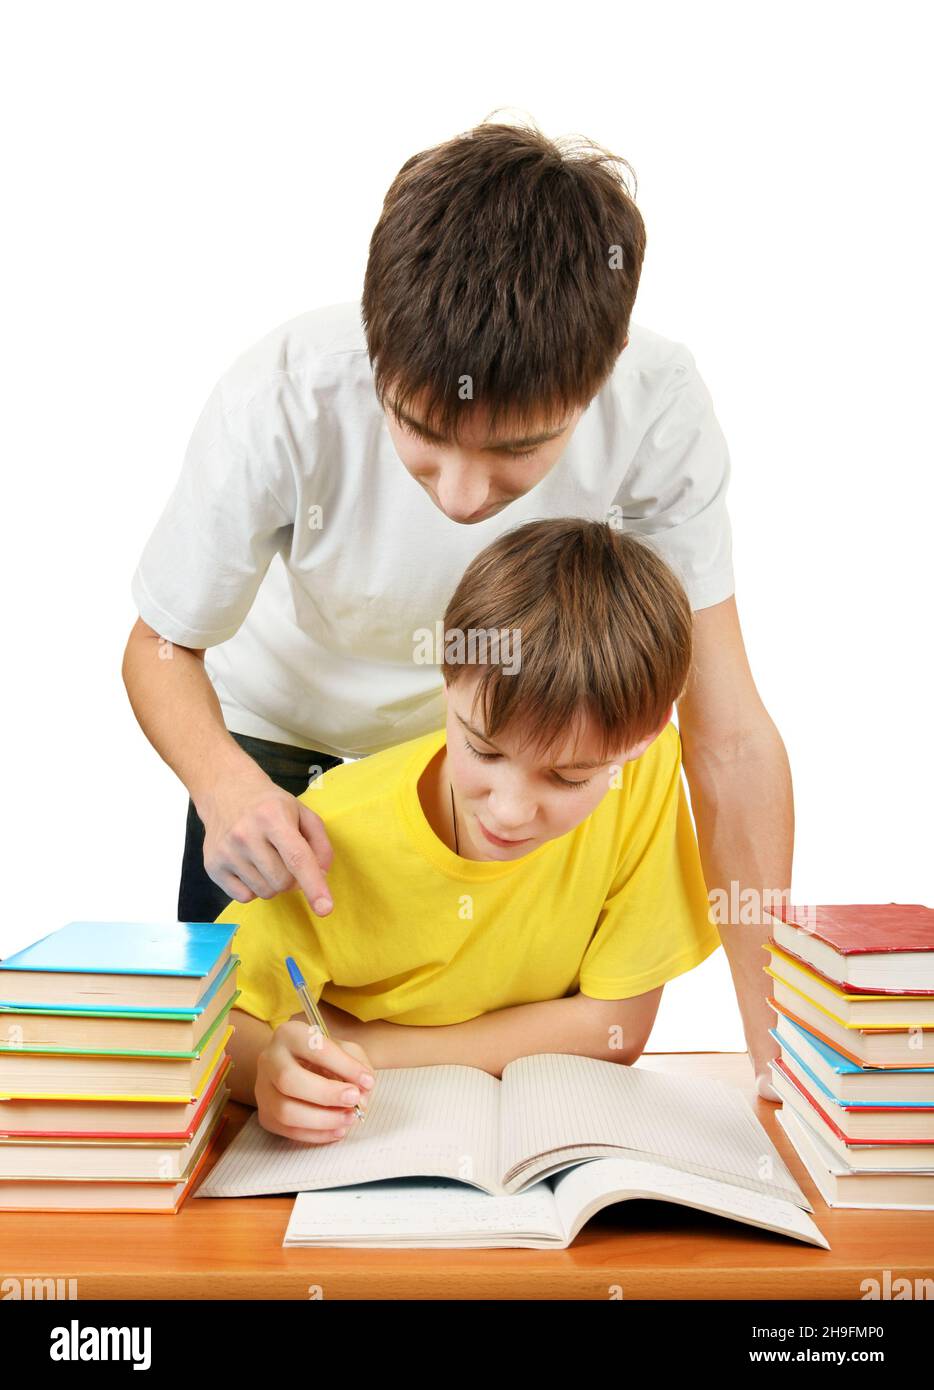 Брат помогает уроки. Братья делают уроки. Младший брат делает уроки. Старший и младший брат делает уроки. Брат помогает делать уроки.